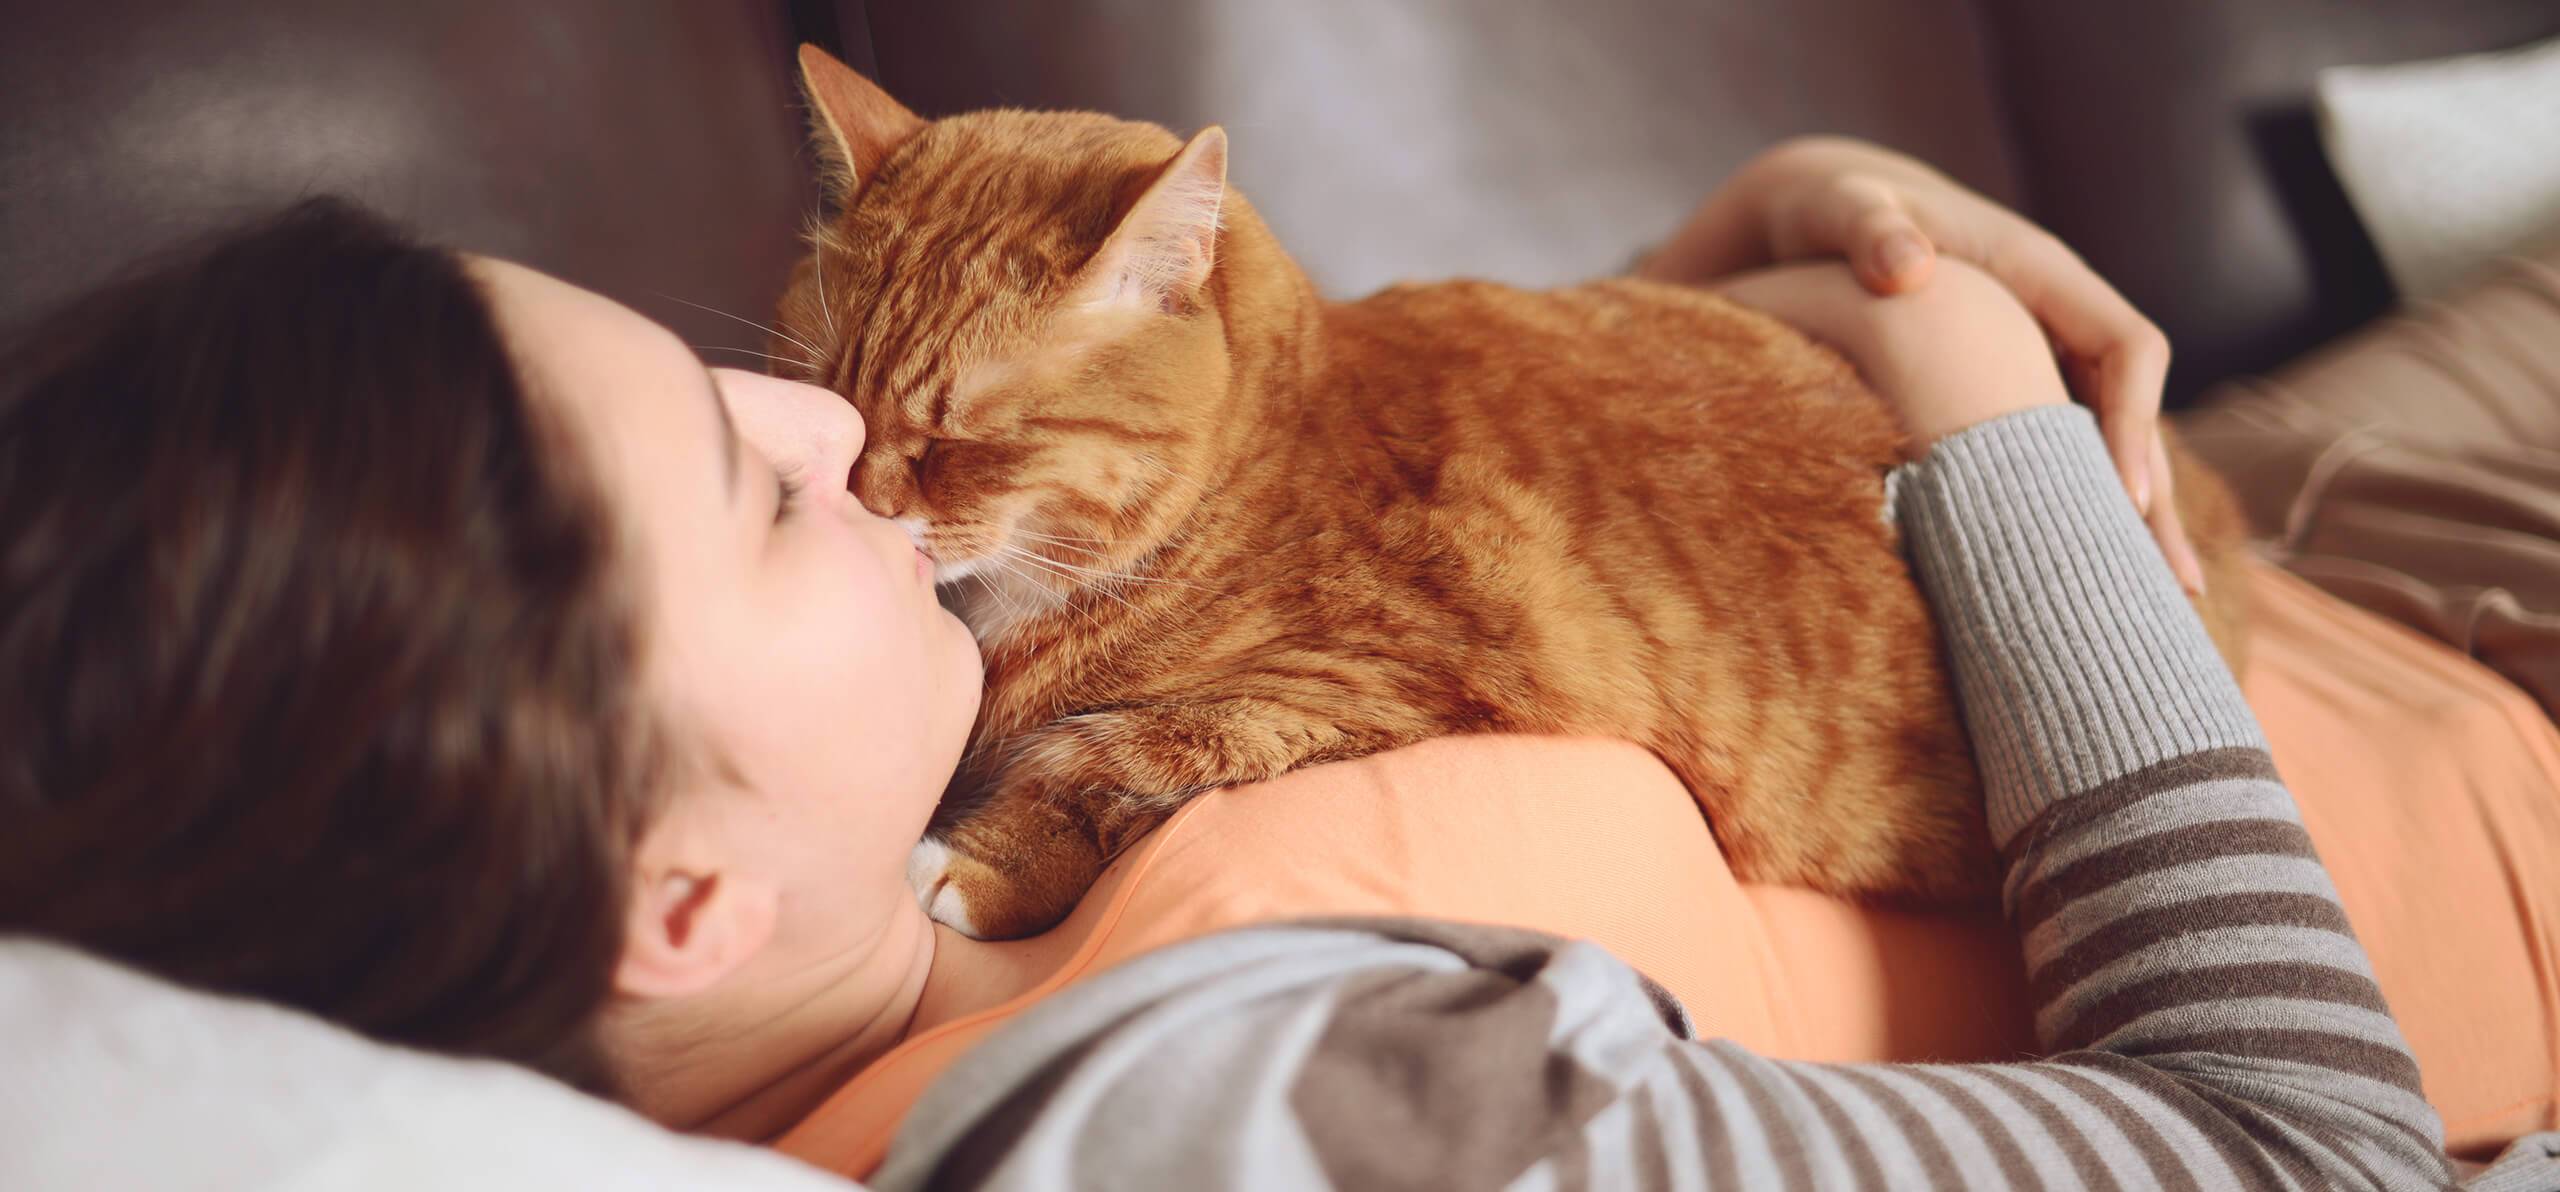 Специалисты рассказали, что происходит со здоровьем, когда ваш кот спит с вами